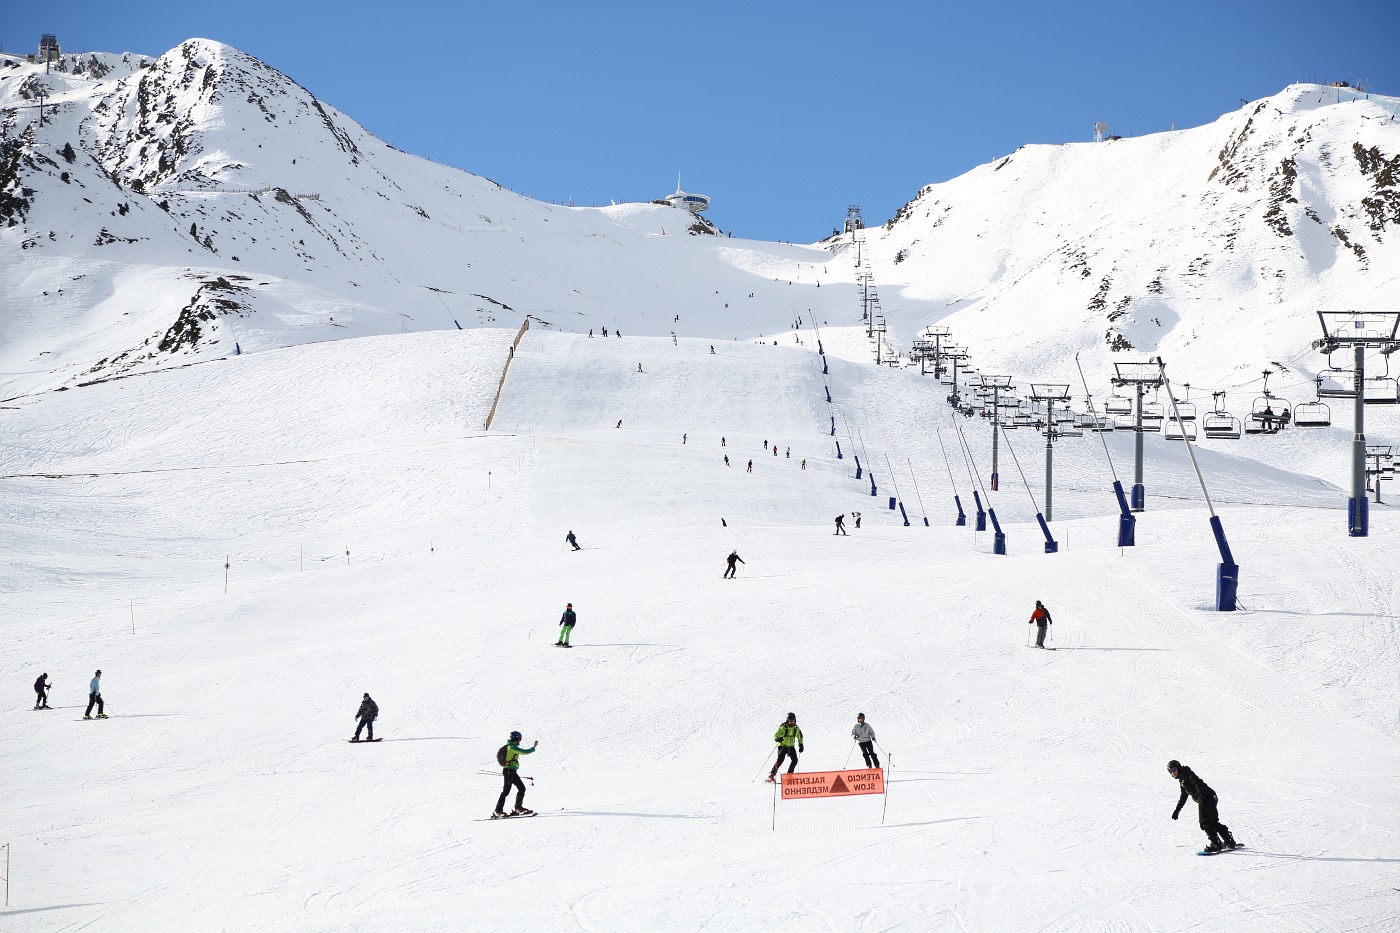 Sumergido Respectivamente Subrayar El 85% de la industria del esquí cree que las estaciones abrirán la  temporada de